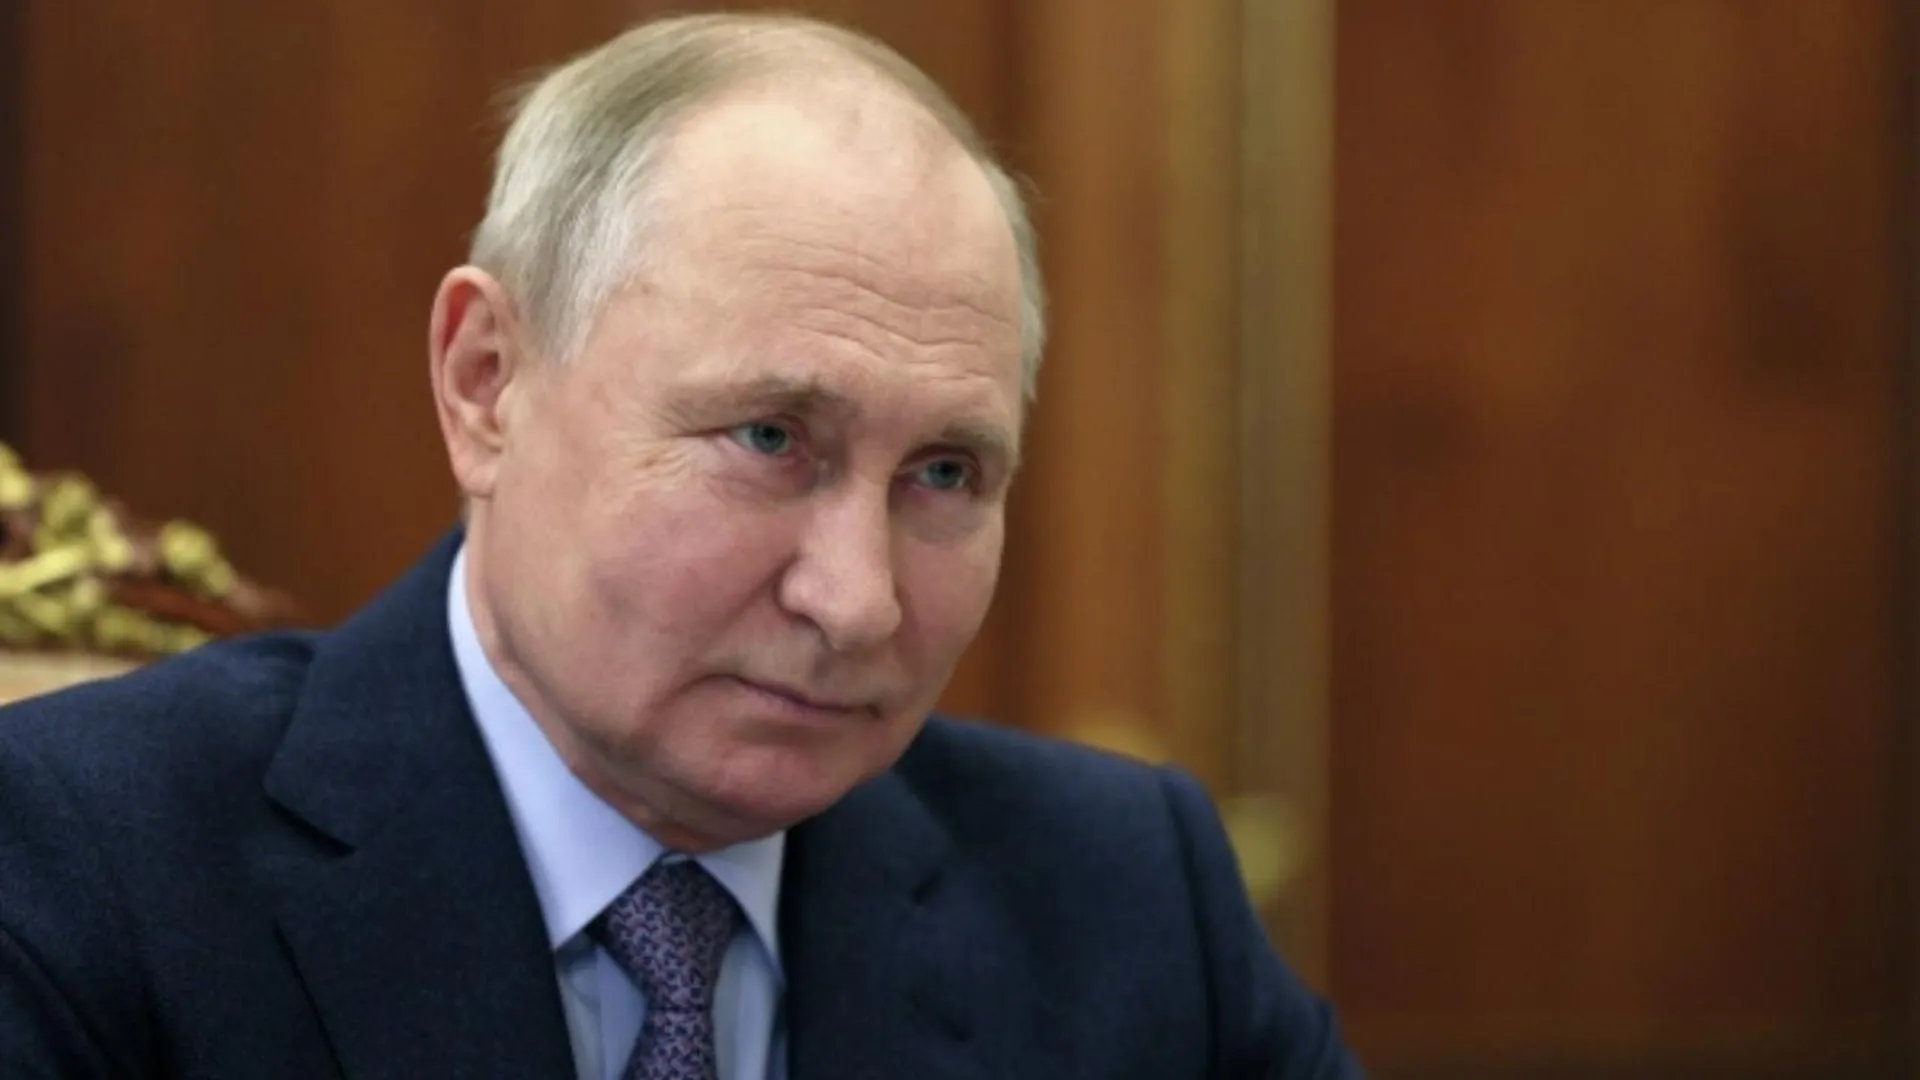 Financial Review: у Путина есть все причины улыбаться подобно Чеширскому коту